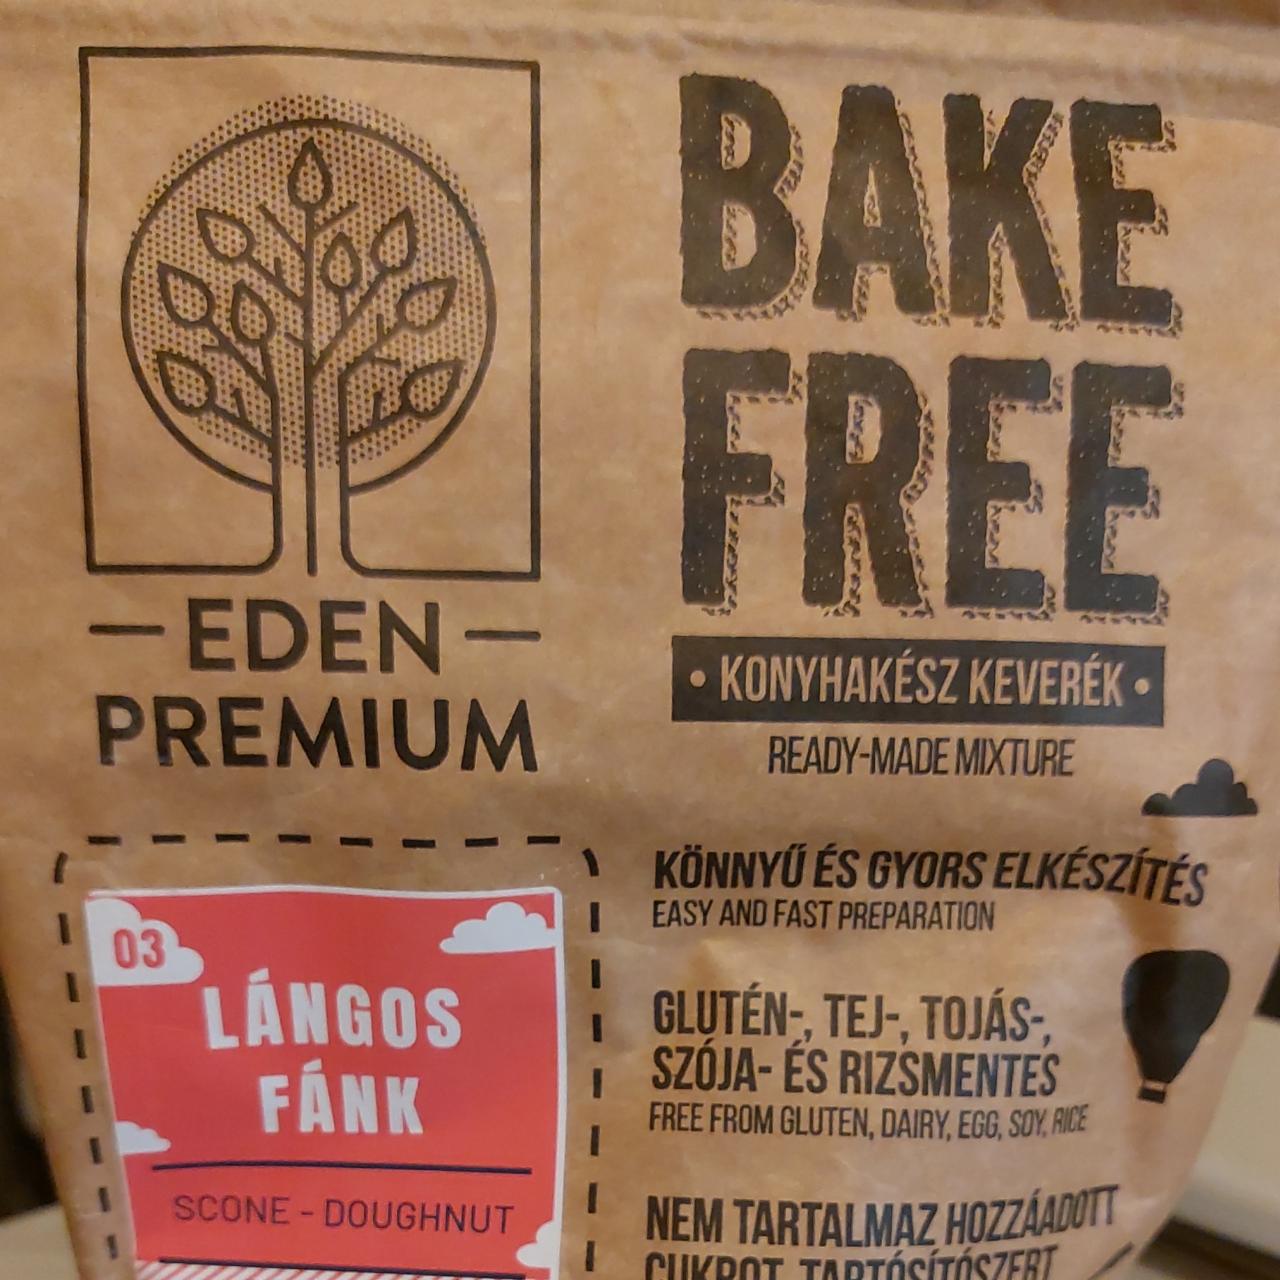 Képek - Bake free lángos fánk liszt Eden Premium